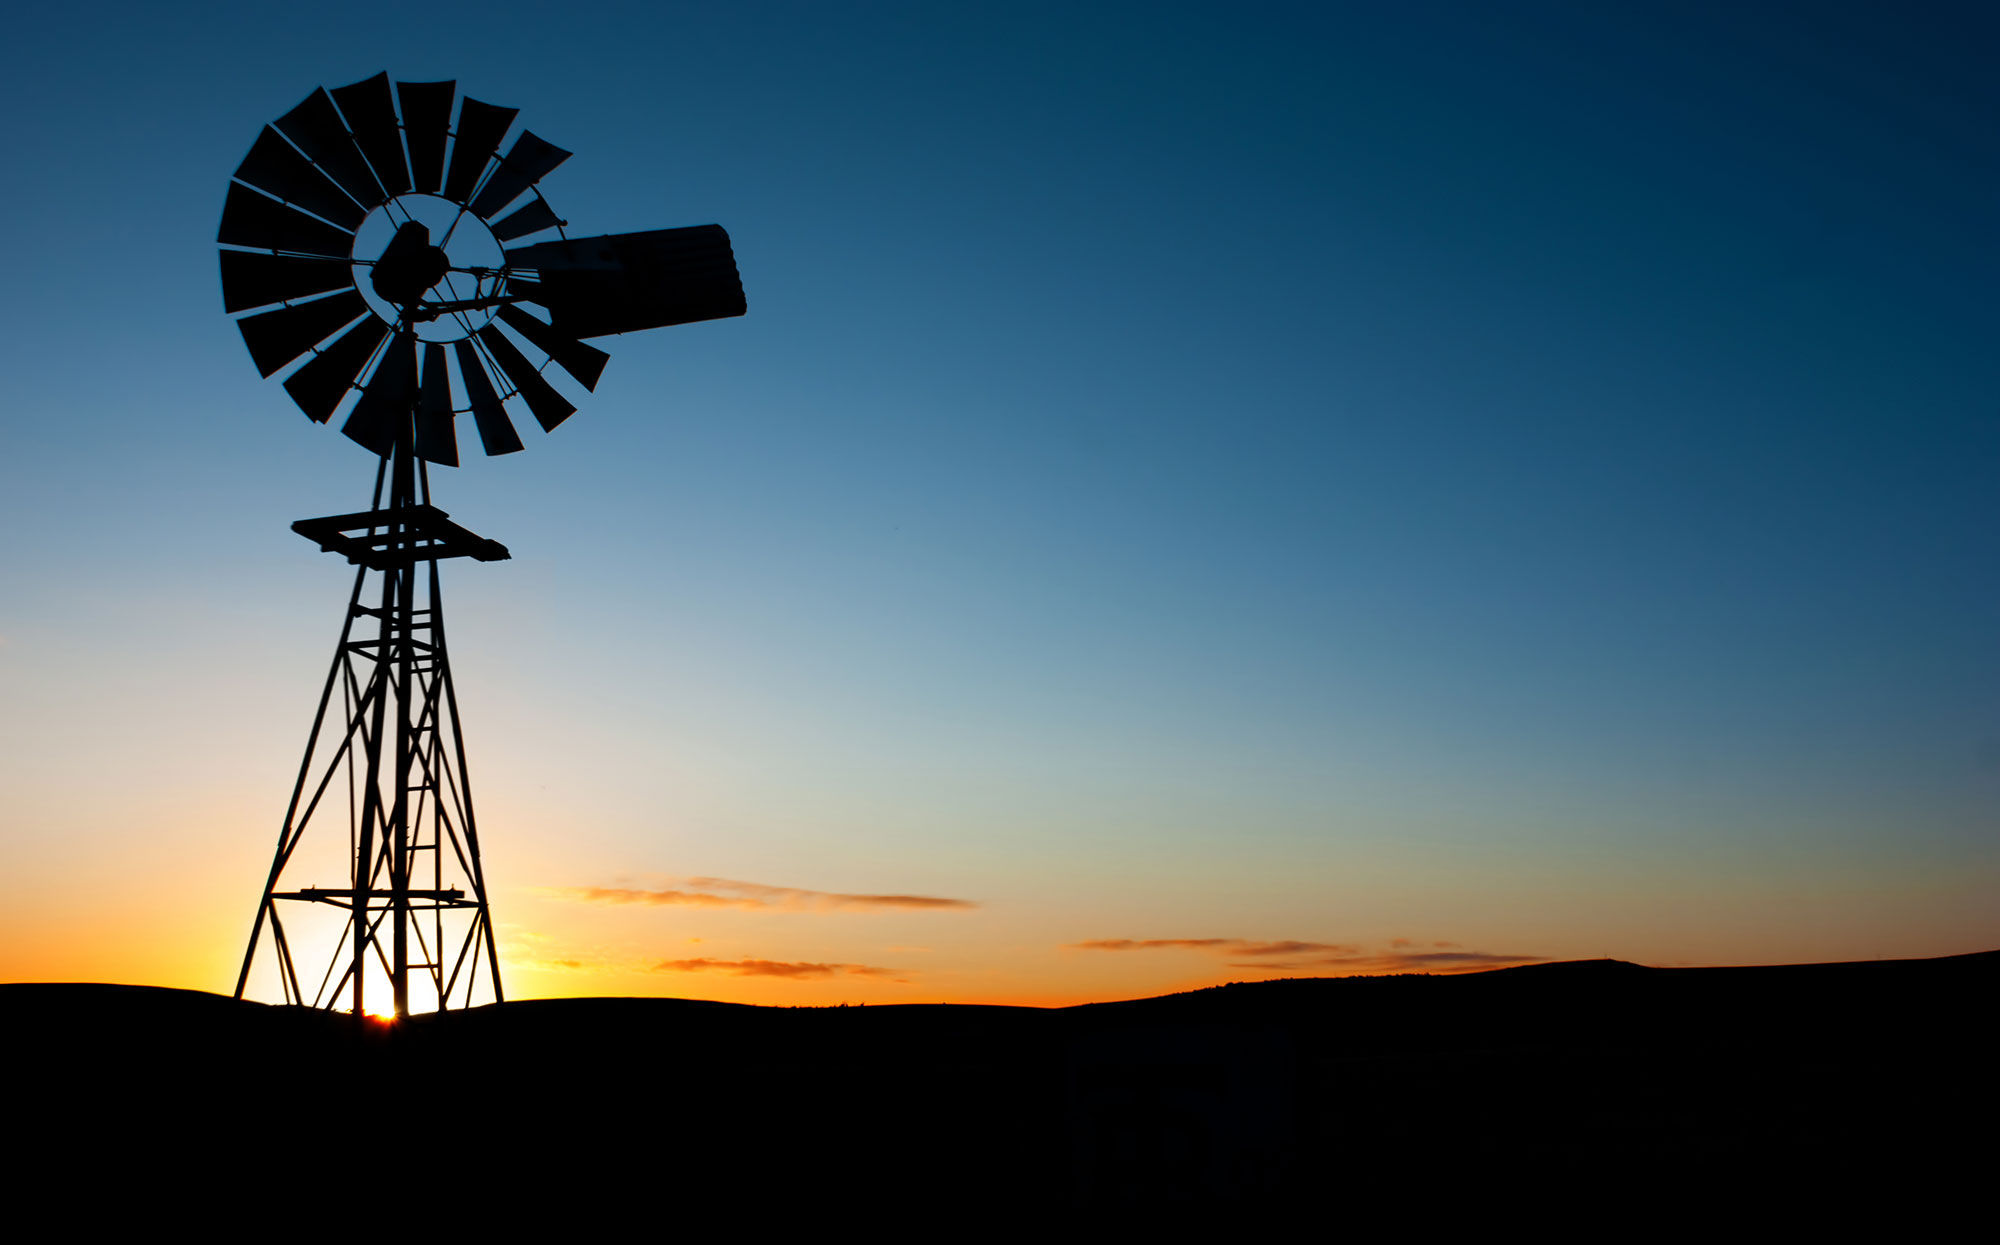 bigstock-Sun-rises-behind-a-windmill-15656000.jpg